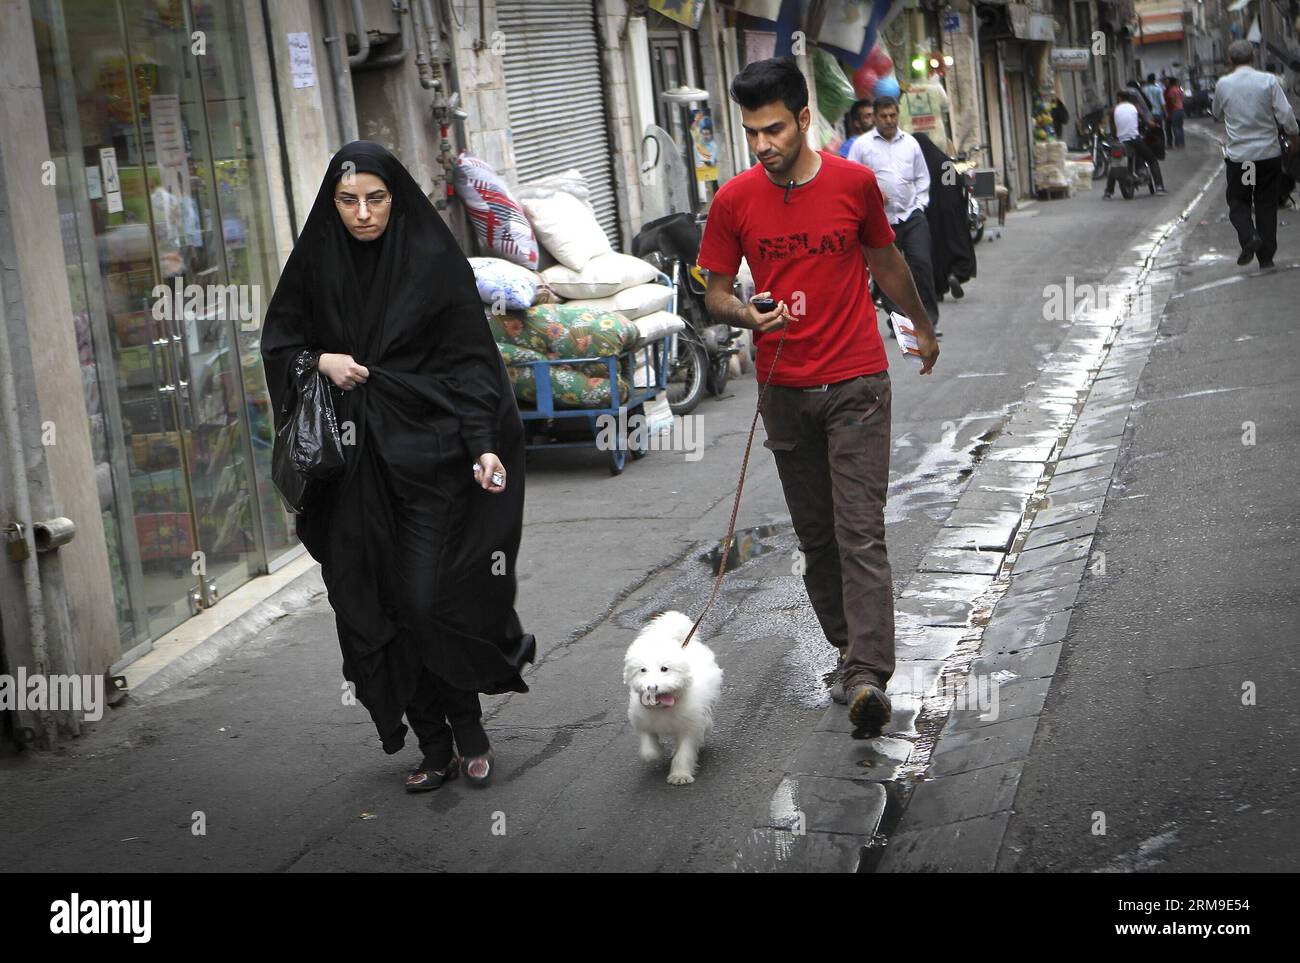 (140520) -- TÉHÉRAN, 20 mai 2014 (Xinhua) -- Une femme vêtue de tchador marche dans une rue de Téhéran, capitale de l'Iran, le 19 mai 2014. Chador est une sorte de hijab formel pour de nombreuses femmes en Iran dans les lieux publics. Le hijab, une couverture des cheveux et du corps pour les femmes, a été rendu public après la révolution islamique en Iran en 1979. (Xinhua/Ahmad Halabisaz)(zhf) IRAN-TEHRAN-WOMEN-HIJAB PUBLICATIONxNOTxINxCHN TEHRAN Mai 20 2014 XINHUA une femme vêtue de tchador marche DANS une rue à TÉHÉRAN capitale de l'Iran Mai 19 2014 chador EST un enfant du hijab formel pour BEAUCOUP DE femmes en Iran dans les lieux publics hijab une couverture de Banque D'Images